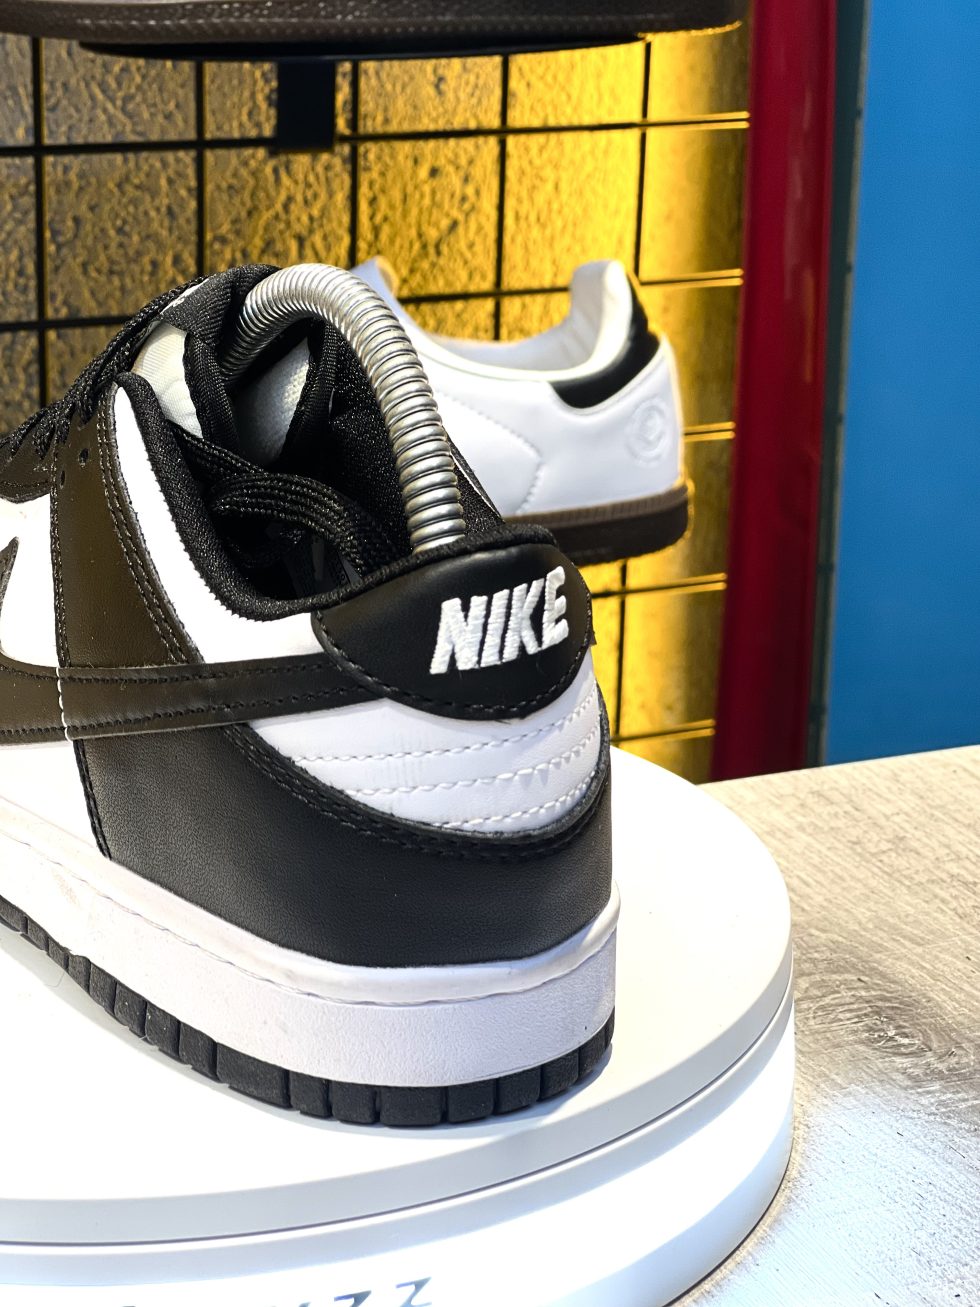 İthal Nike Ayakkabı Modelleri